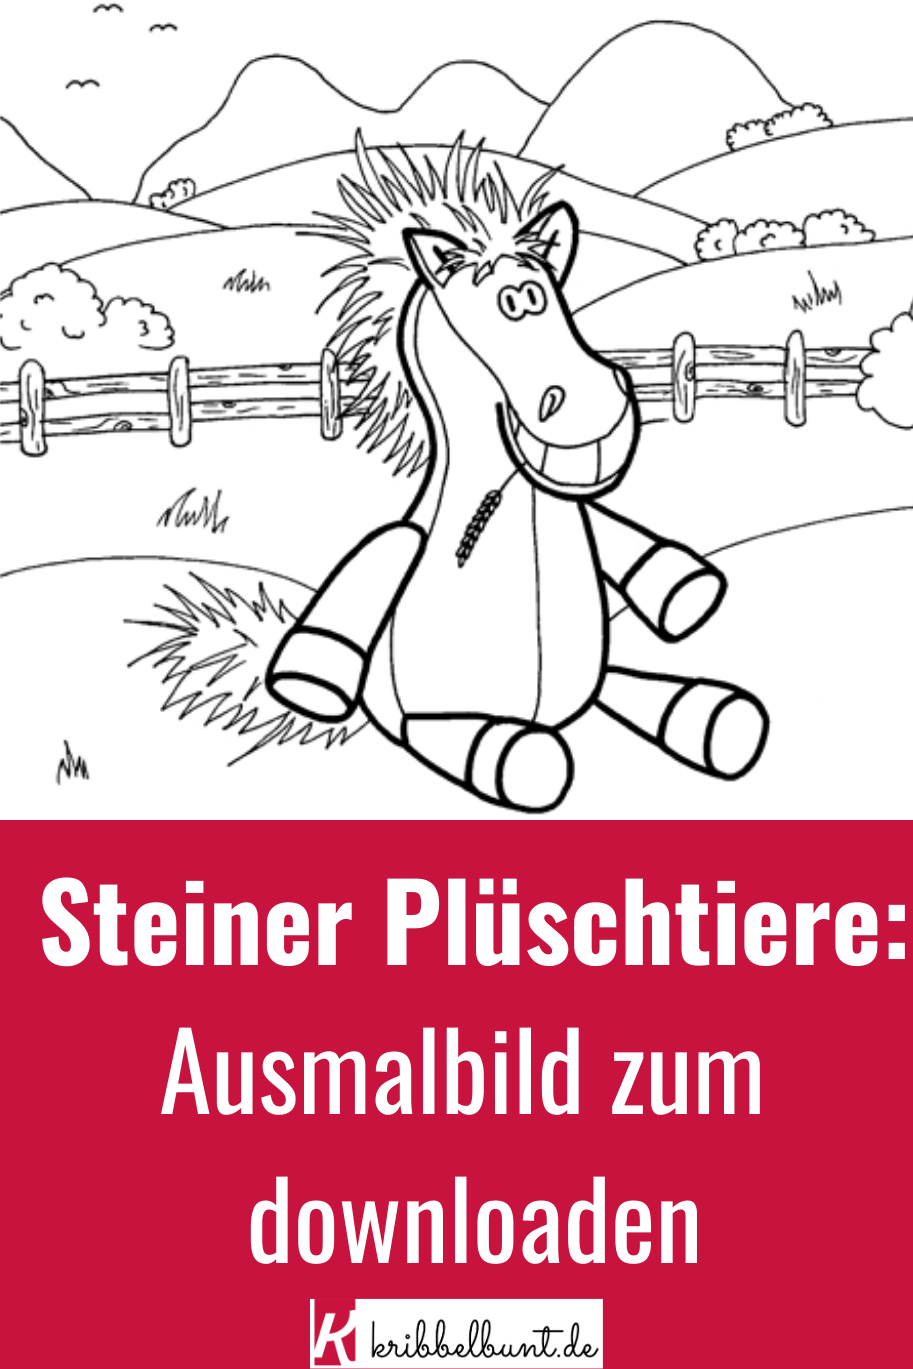 Steiner Plüschtiere Ausmalbilder Für Kinder - Zum in Ausmalbilder Für Kinder Pferde